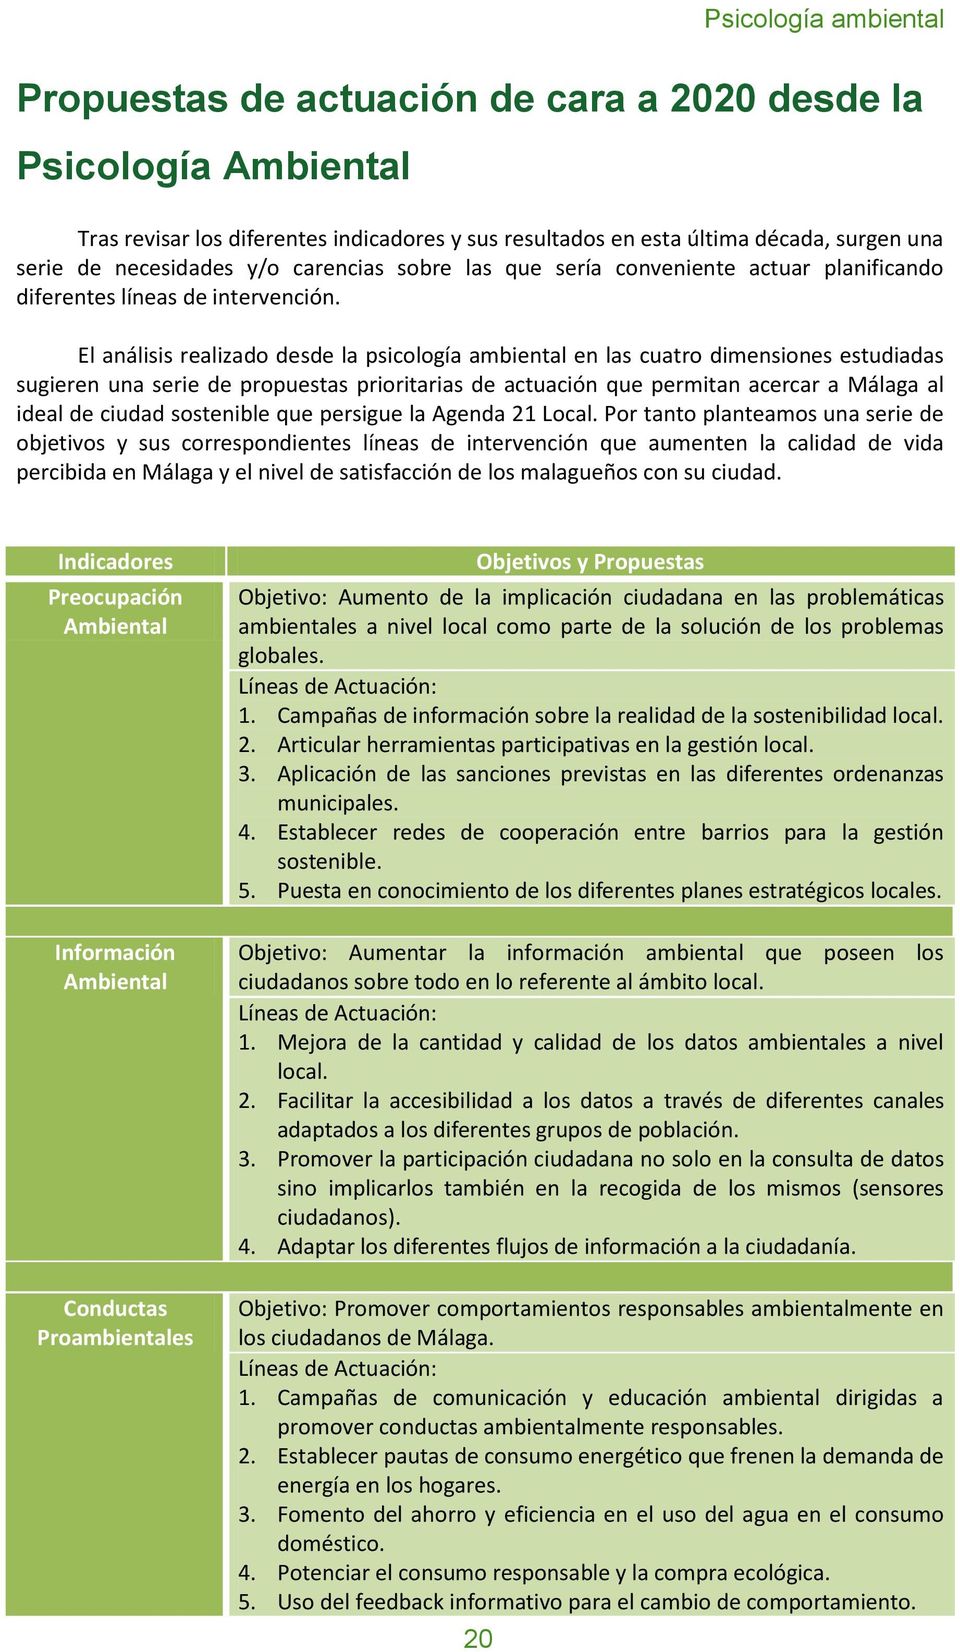 El análisis realizado desde la psicología ambiental en las cuatro dimensiones estudiadas sugieren una serie de propuestas prioritarias de actuación que permitan acercar a Málaga al ideal de ciudad